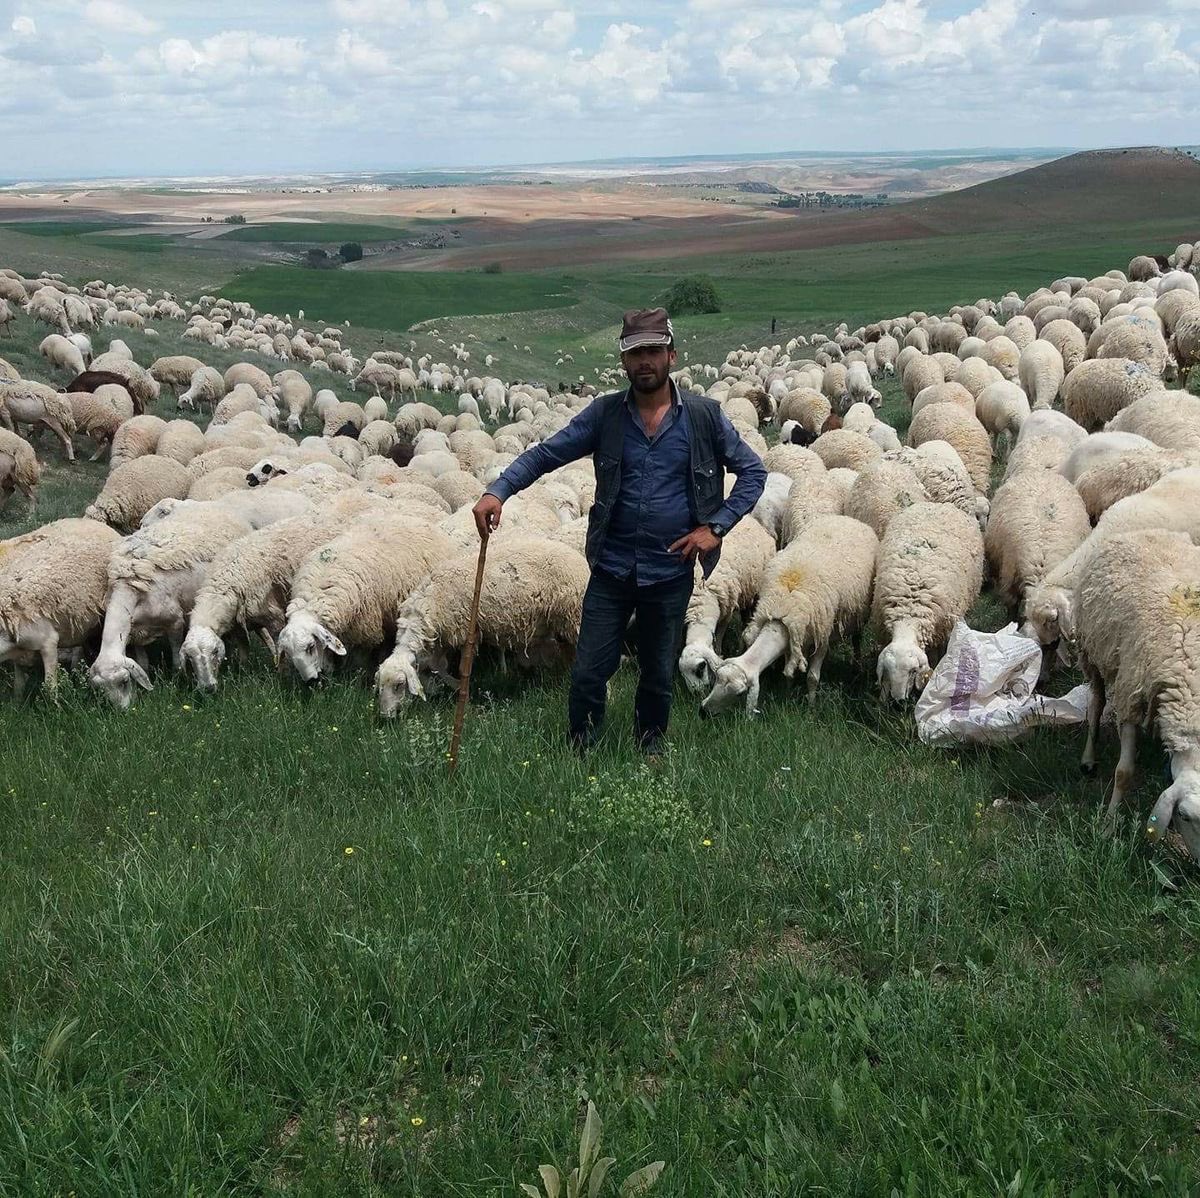 Elazığ Damızlık Koyun ve Keçi Yetiştiricileri Birliği Başkanı Mahmut Sezer: “Elazığ'da 100 bin TL maaşla çalışacak çoban bulamıyoruz.”